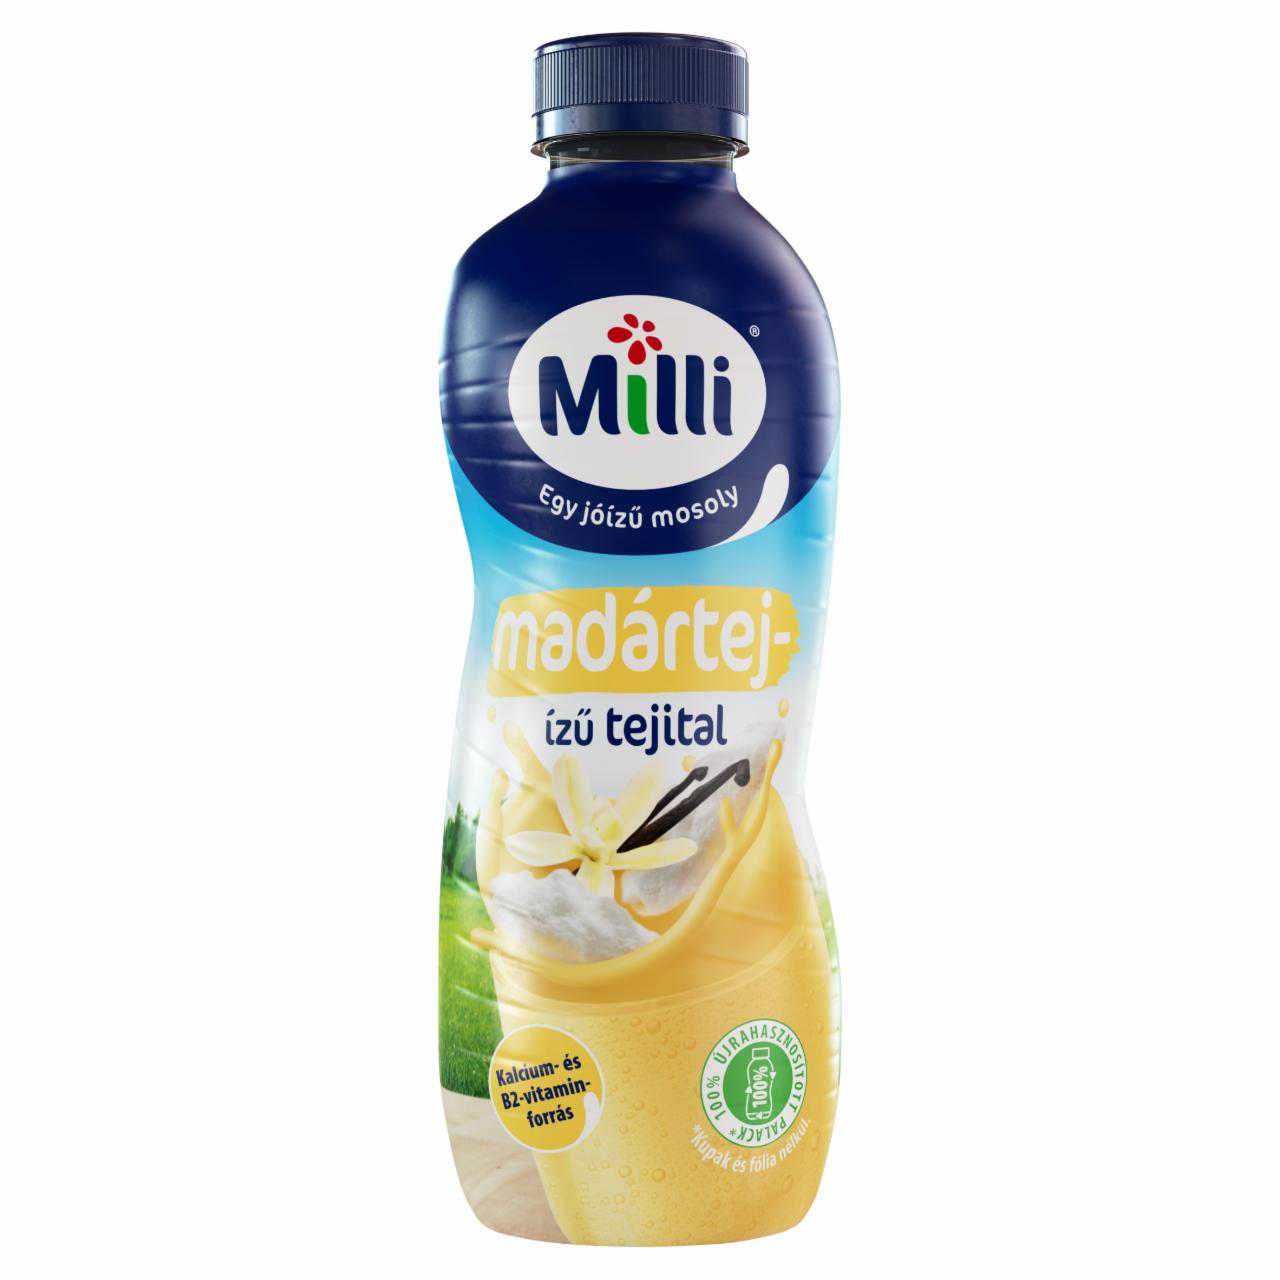 Képek - Milli UHT zsírszegény madártejízű tejital 400 ml